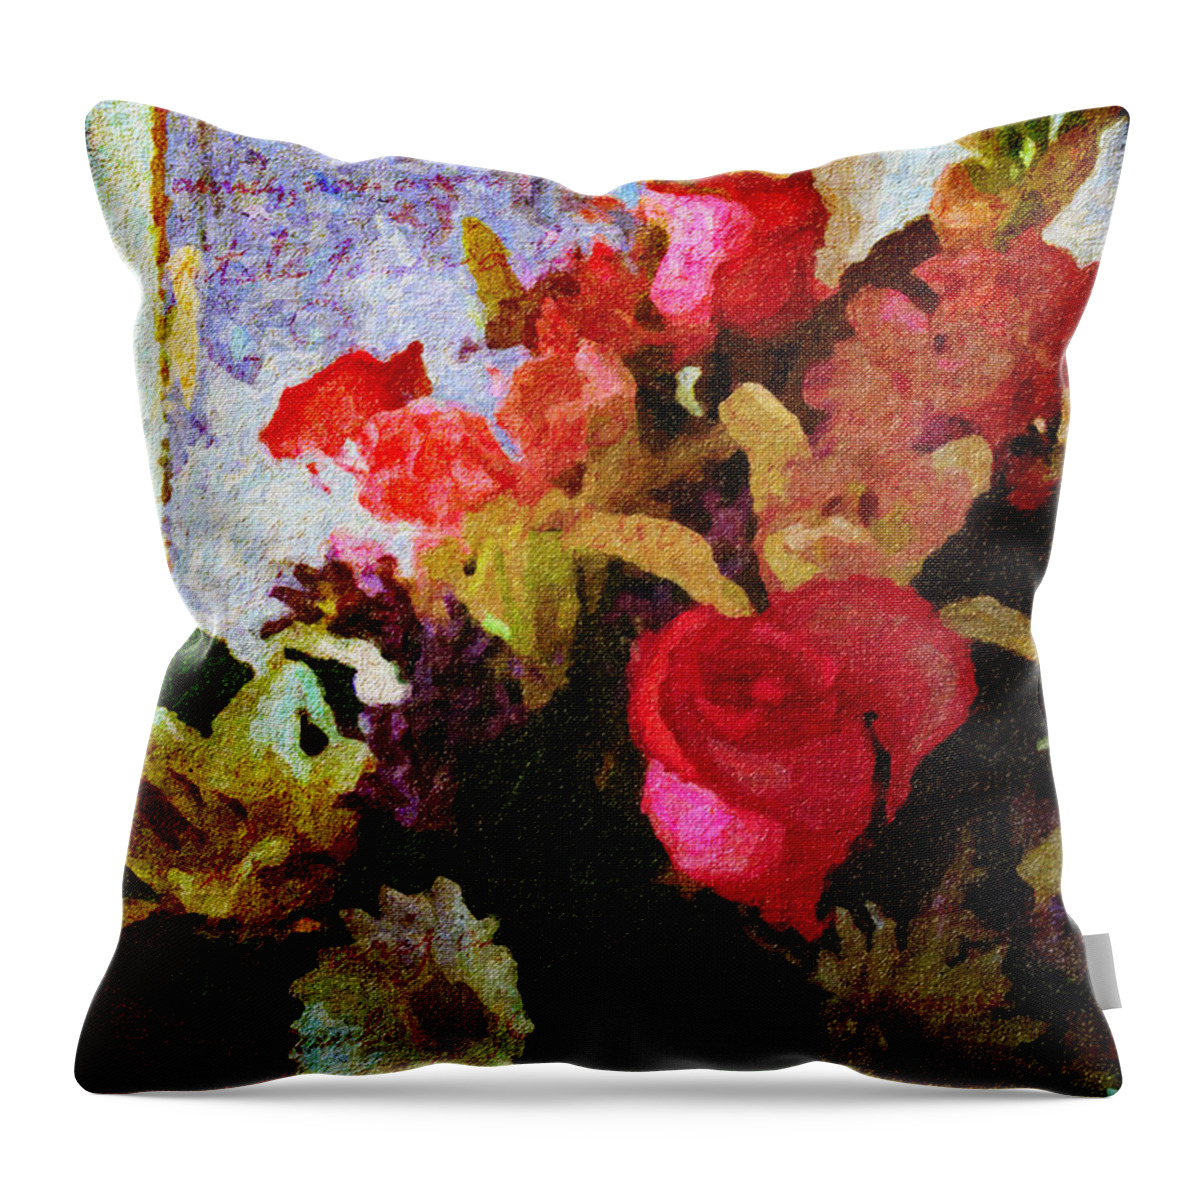 Flower Throw Pillow featuring the digital art Avec Tout Mon Coeur by Lianne Schneider